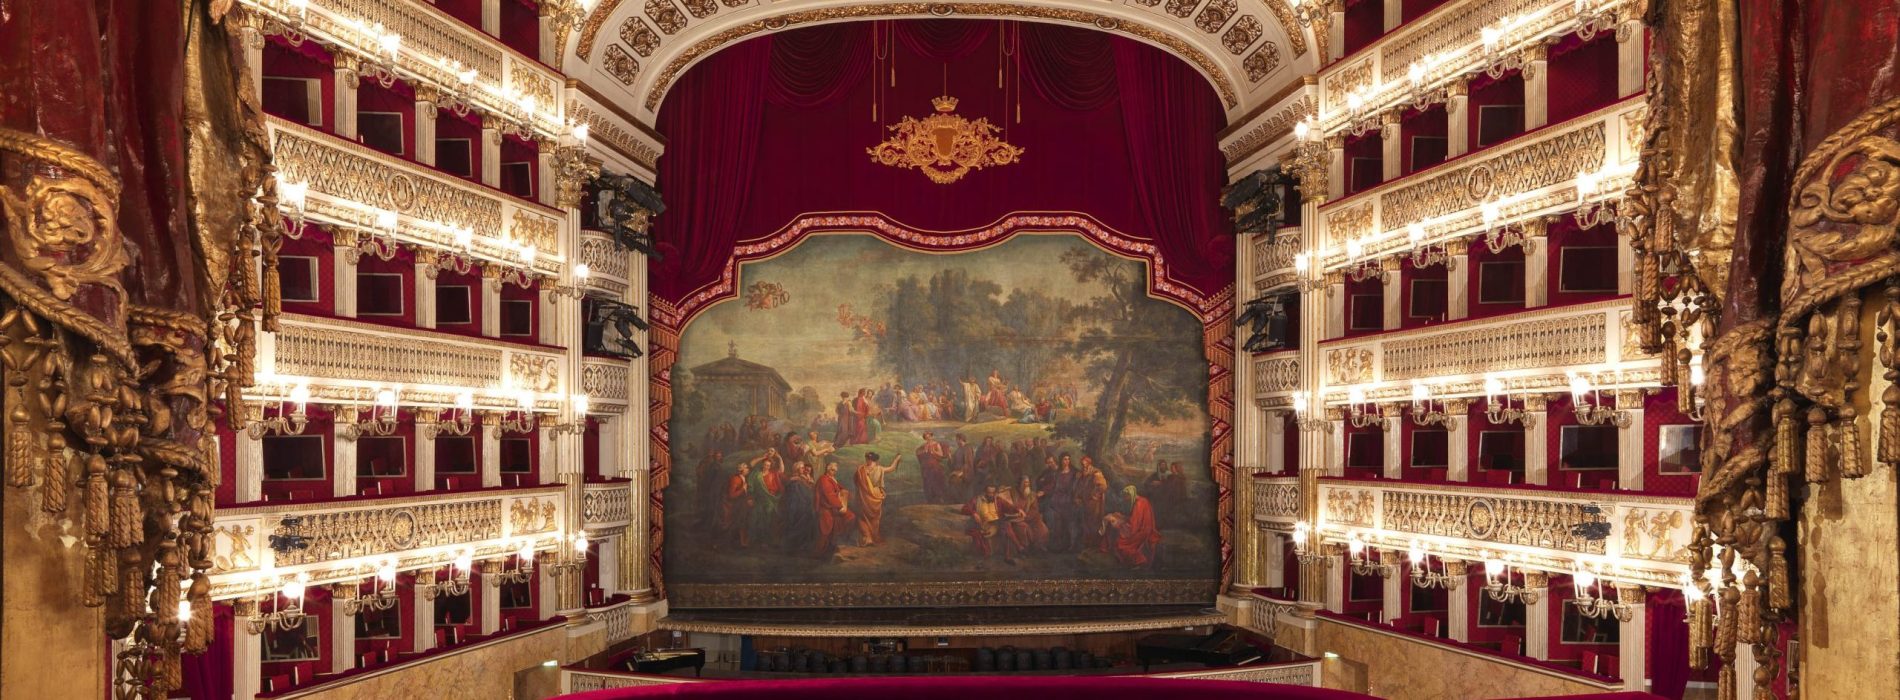 Teatro San Carlo. Raccolta fondi per i profughi giunti a Napoli